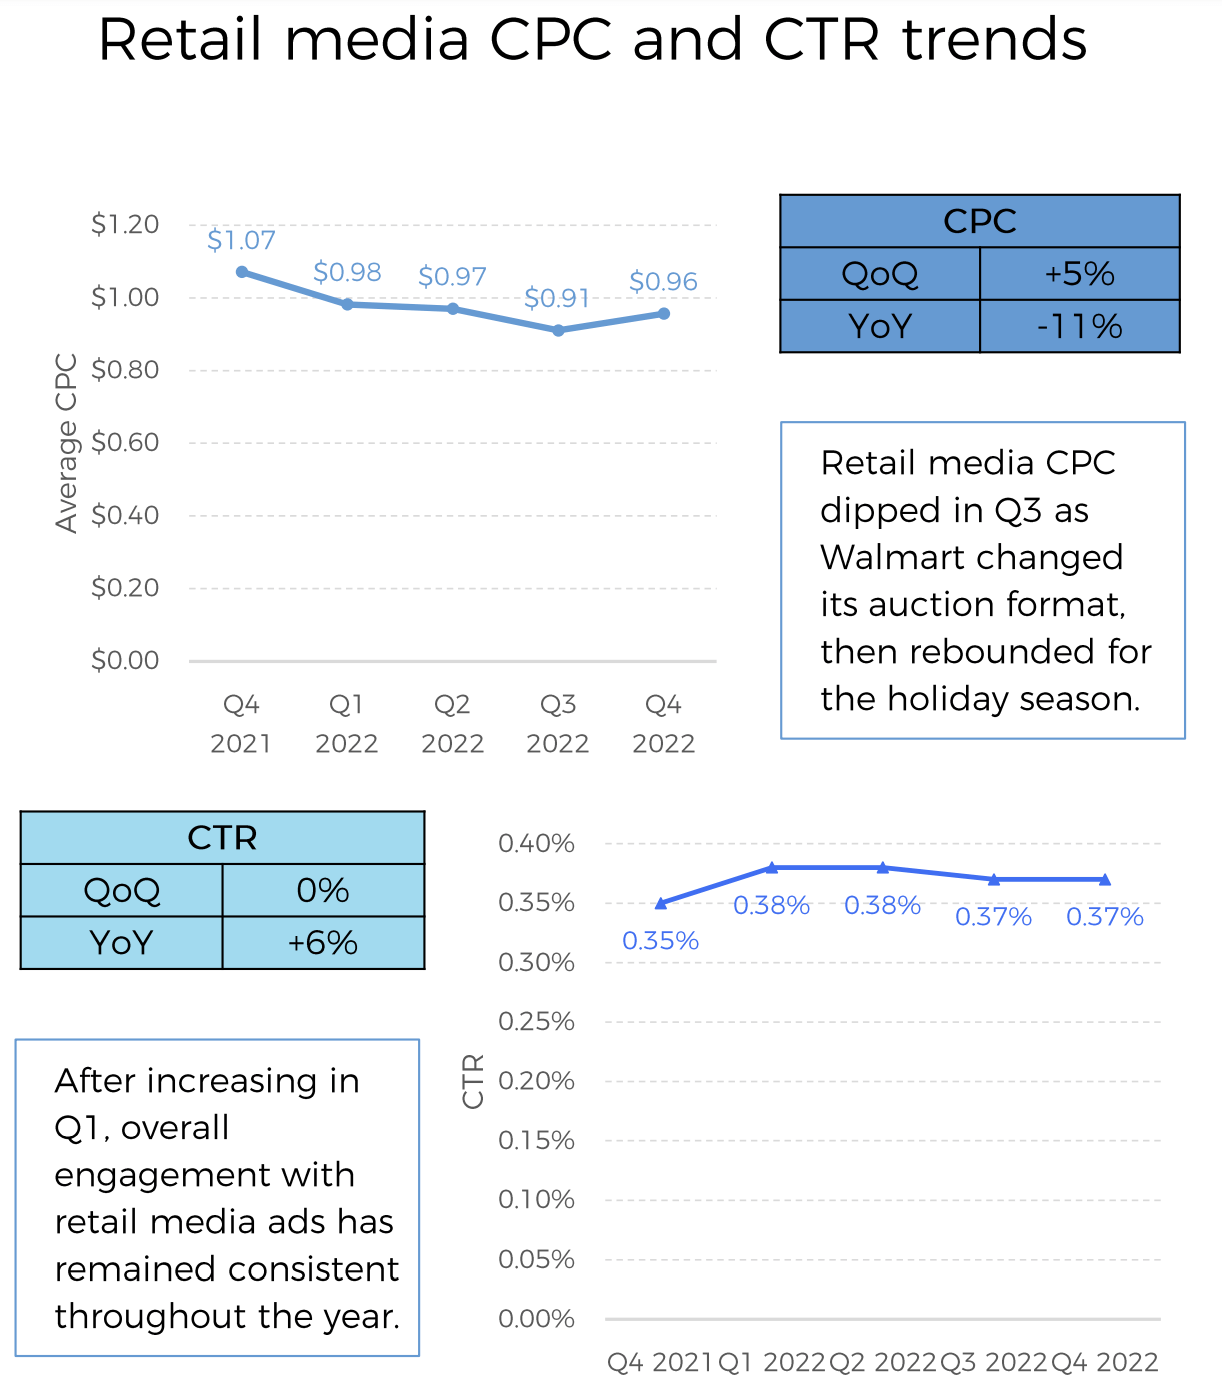 CPM Rates  Current  CPM rates in India 